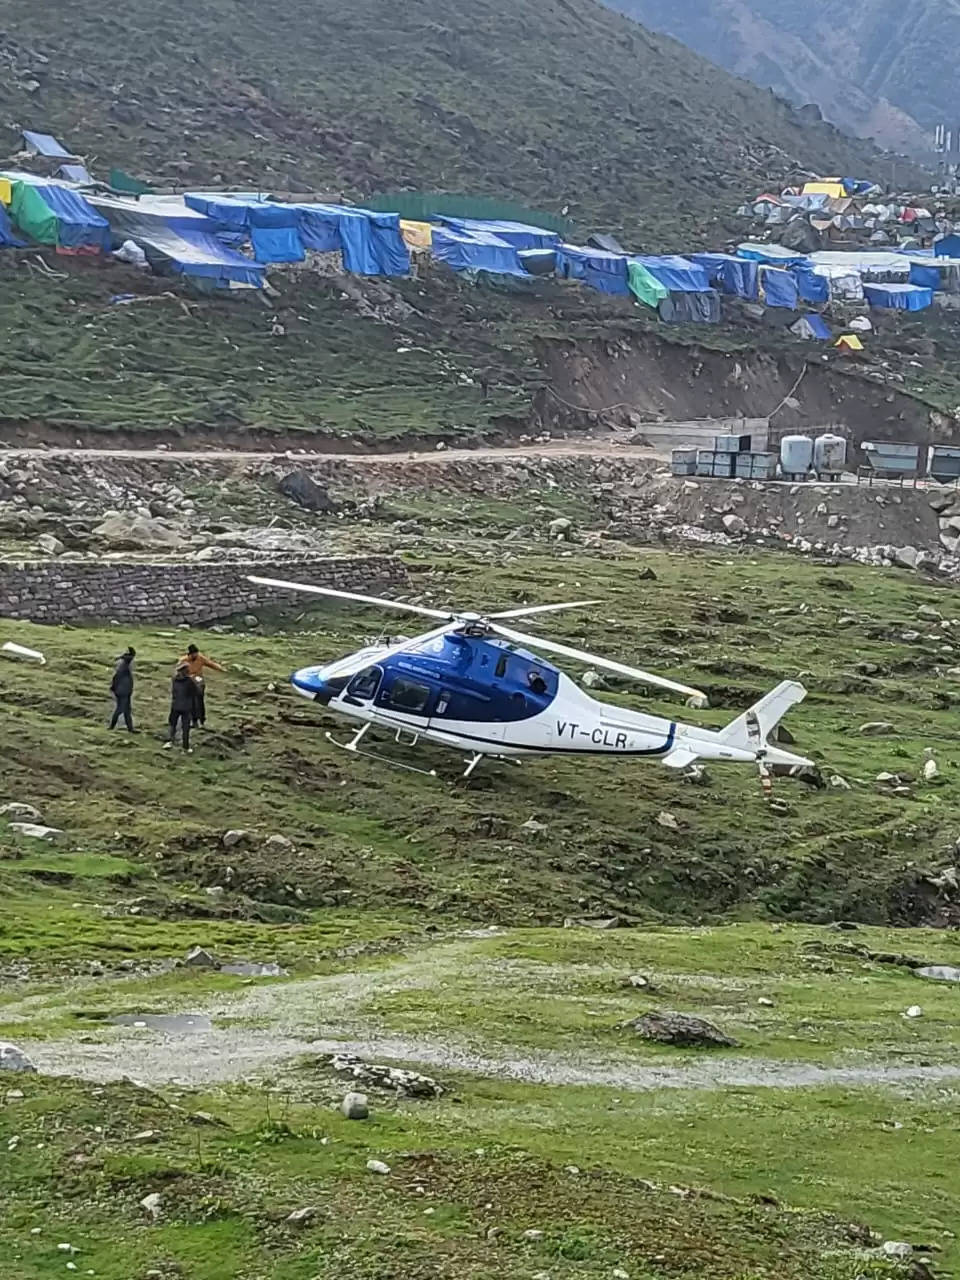   केदारनाथ धाम में हेलिकॉप्टर की इमरजेंसी लैंडिंग, पायलट की सूझबूझ से बाल-बाल बचे श्रद्धालु